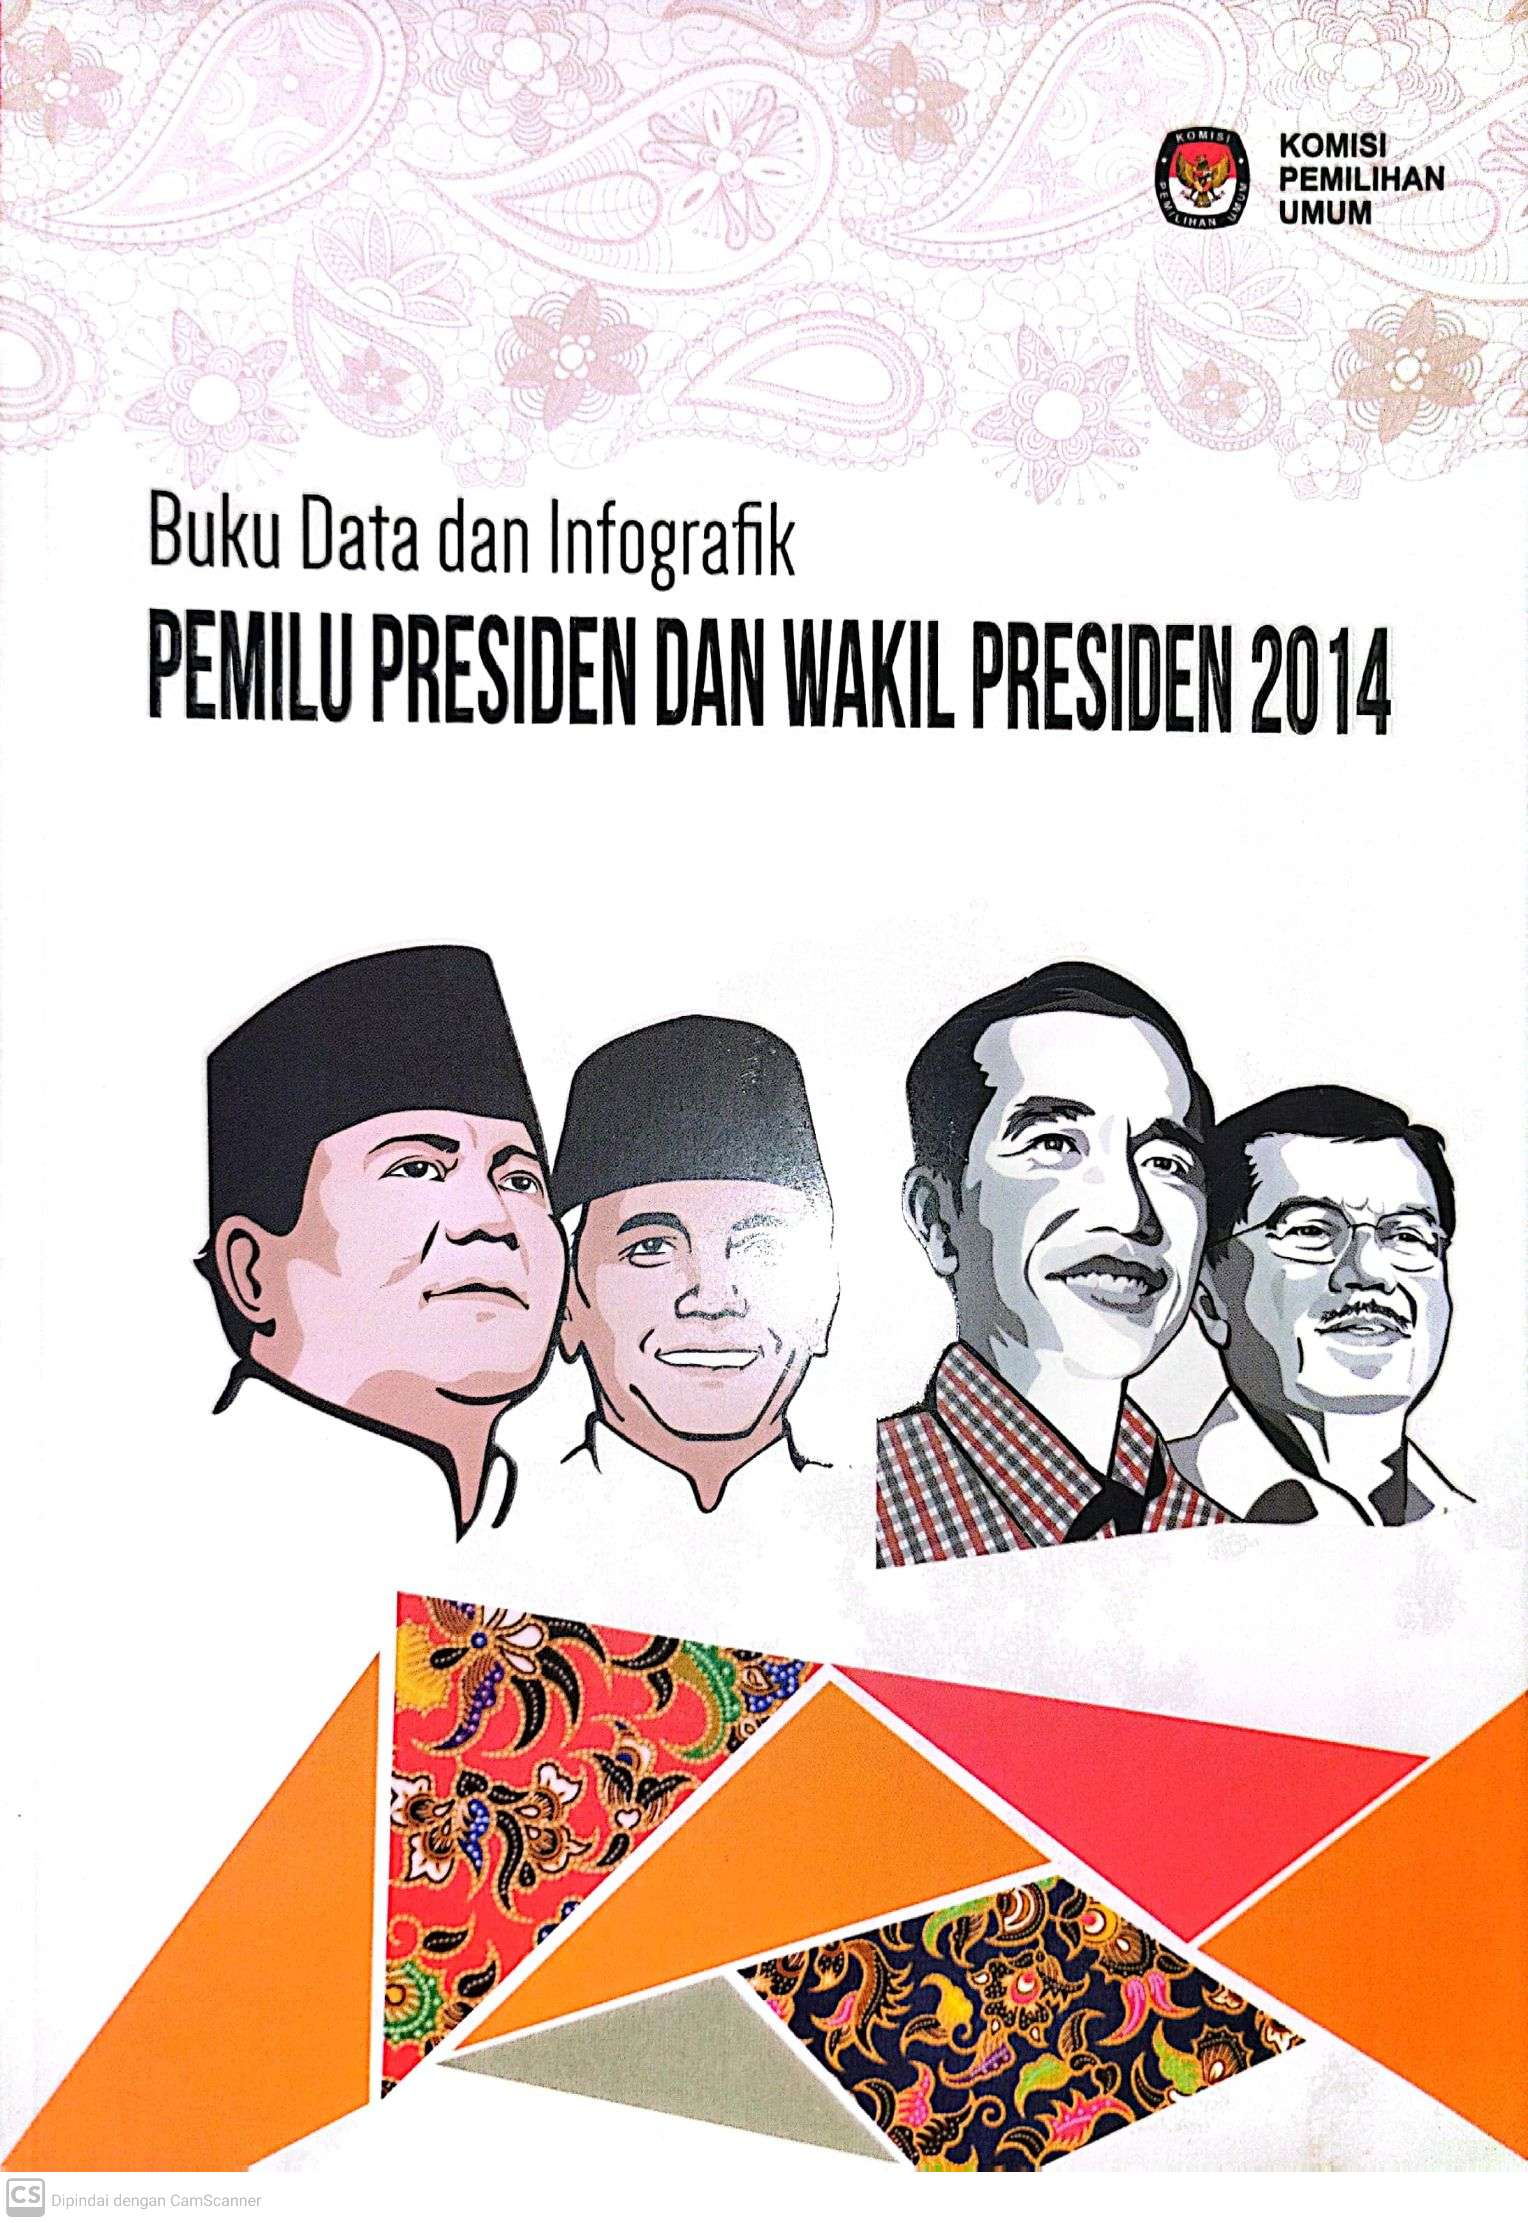 Buku Data dan Infografik Pemilu Presiden dan Wakil Presiden 2014